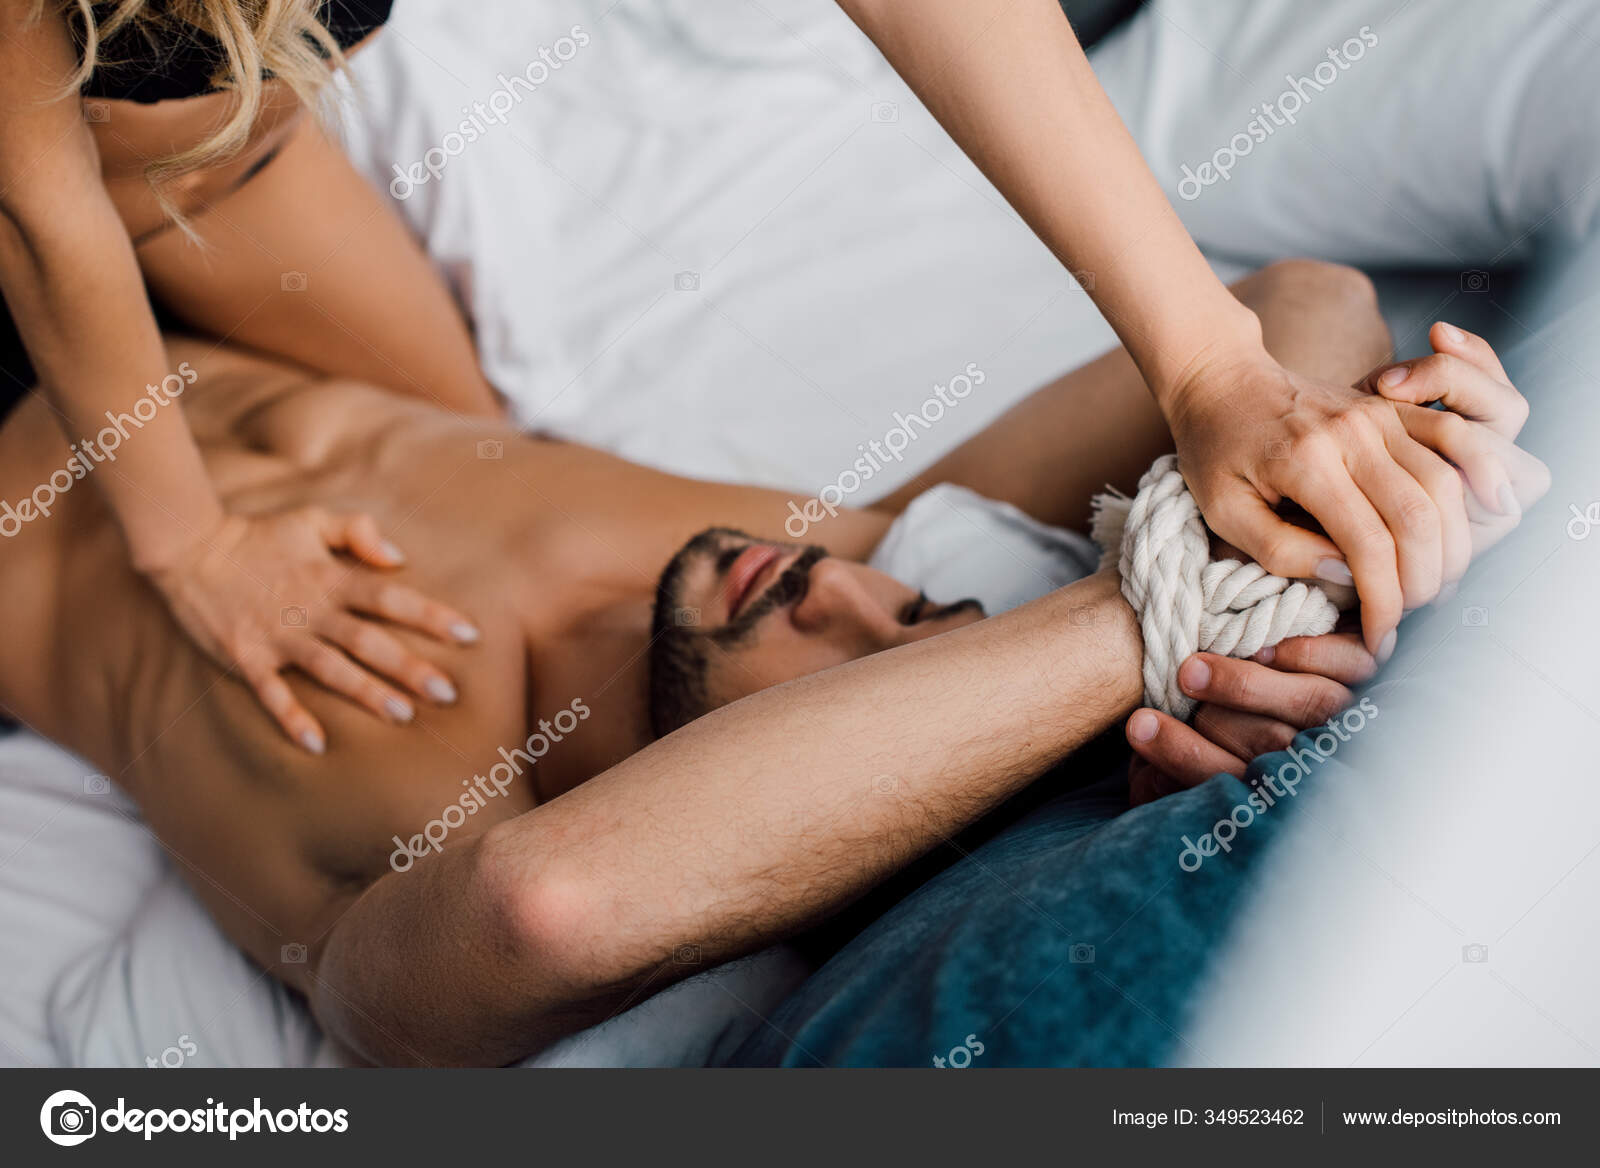 Молодая негритянка со стройными икрами занимается любовью со зрелым мужчиной на кровати